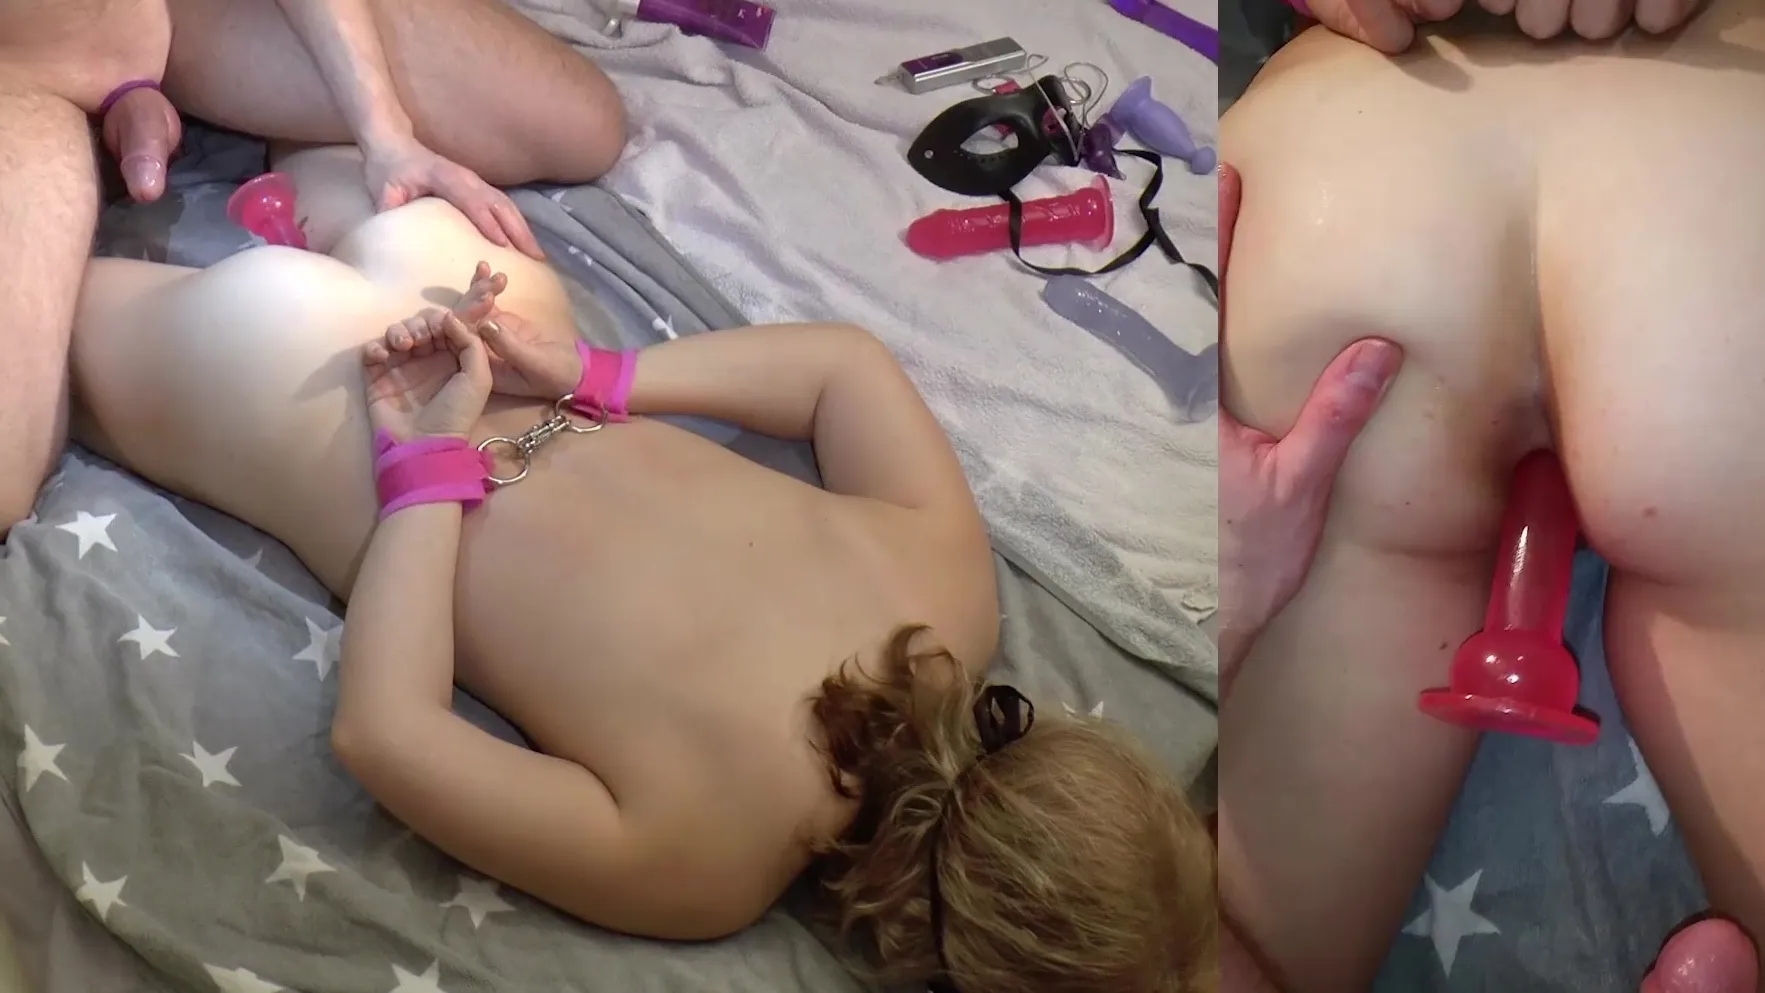 Amateursex auf dem Bett mit Handschellen, Spielzeug und einem fetten Schwanz Sexbild HD